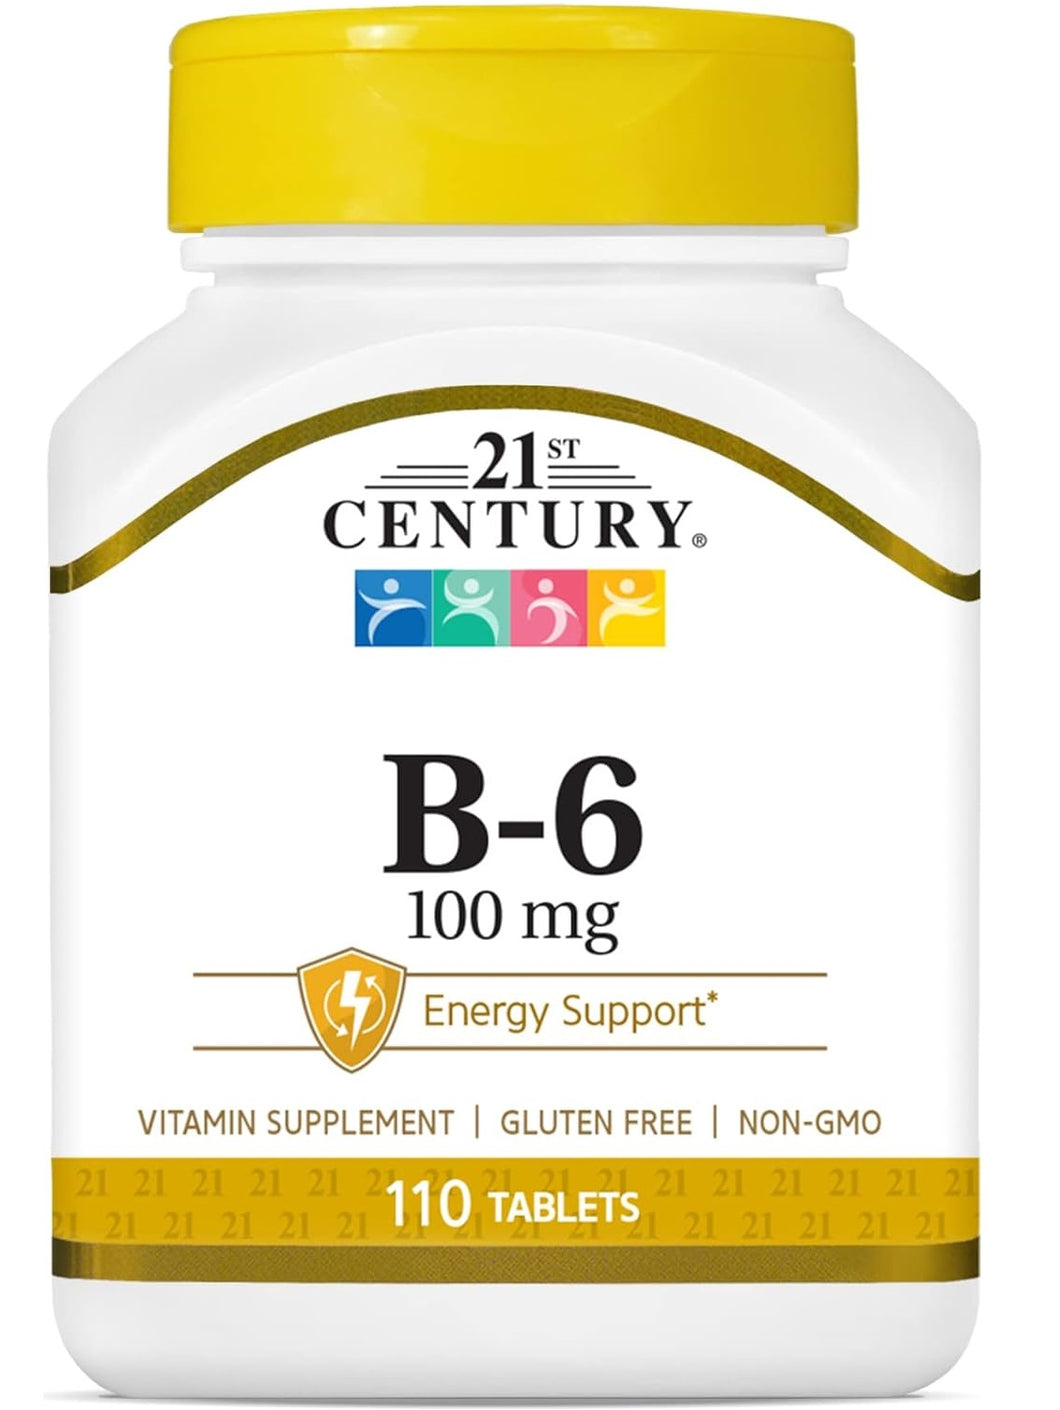 Vitamina B6, 100 mg, 21 Century, 110 tabletas